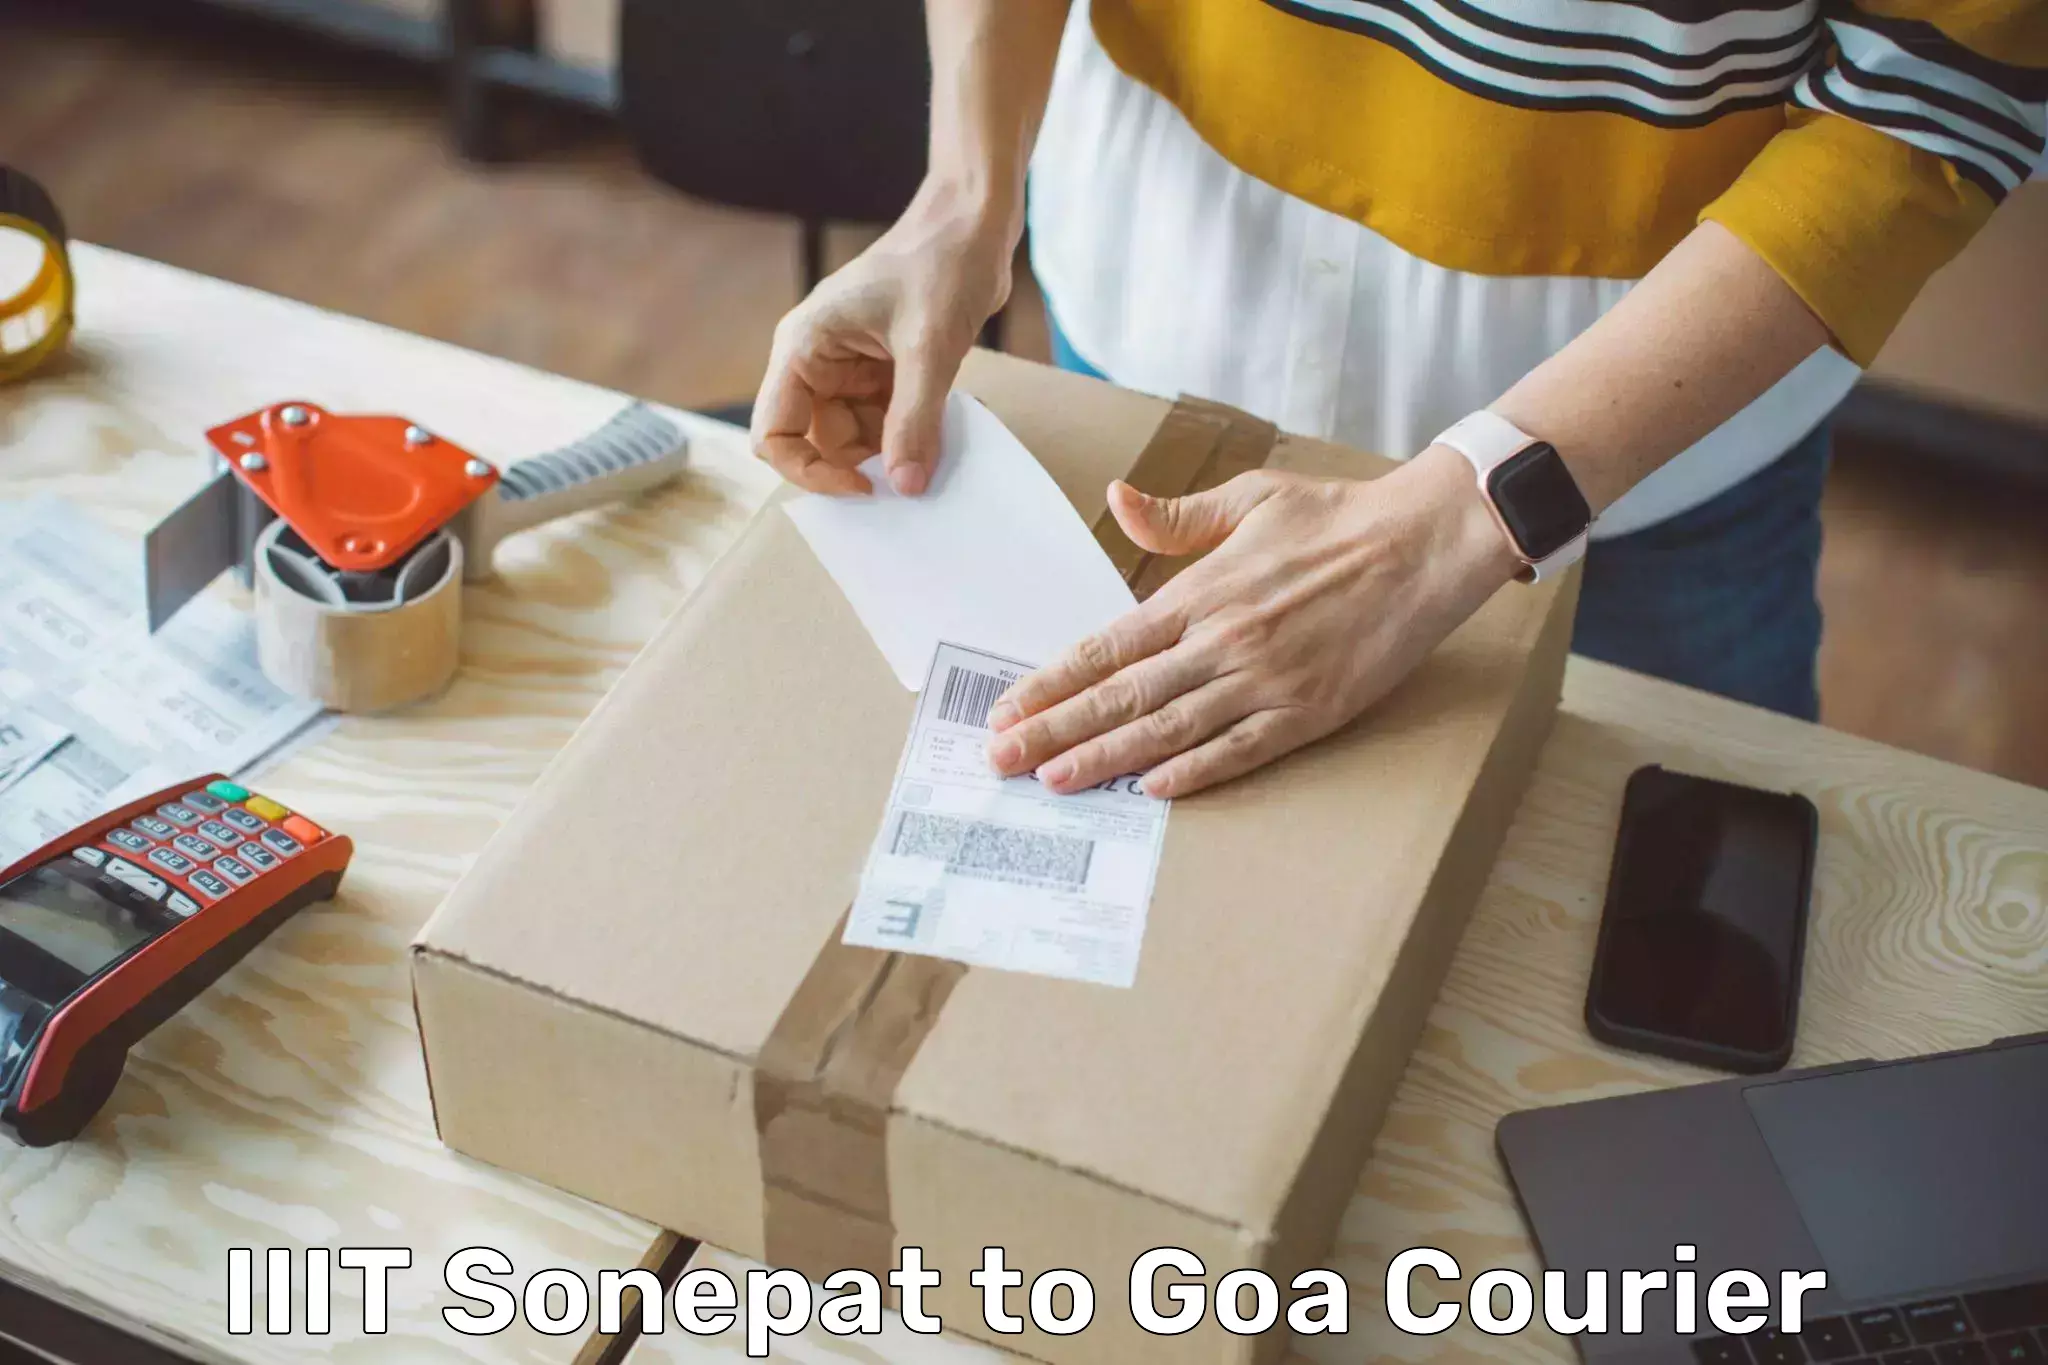 High-priority parcel service IIIT Sonepat to Panaji